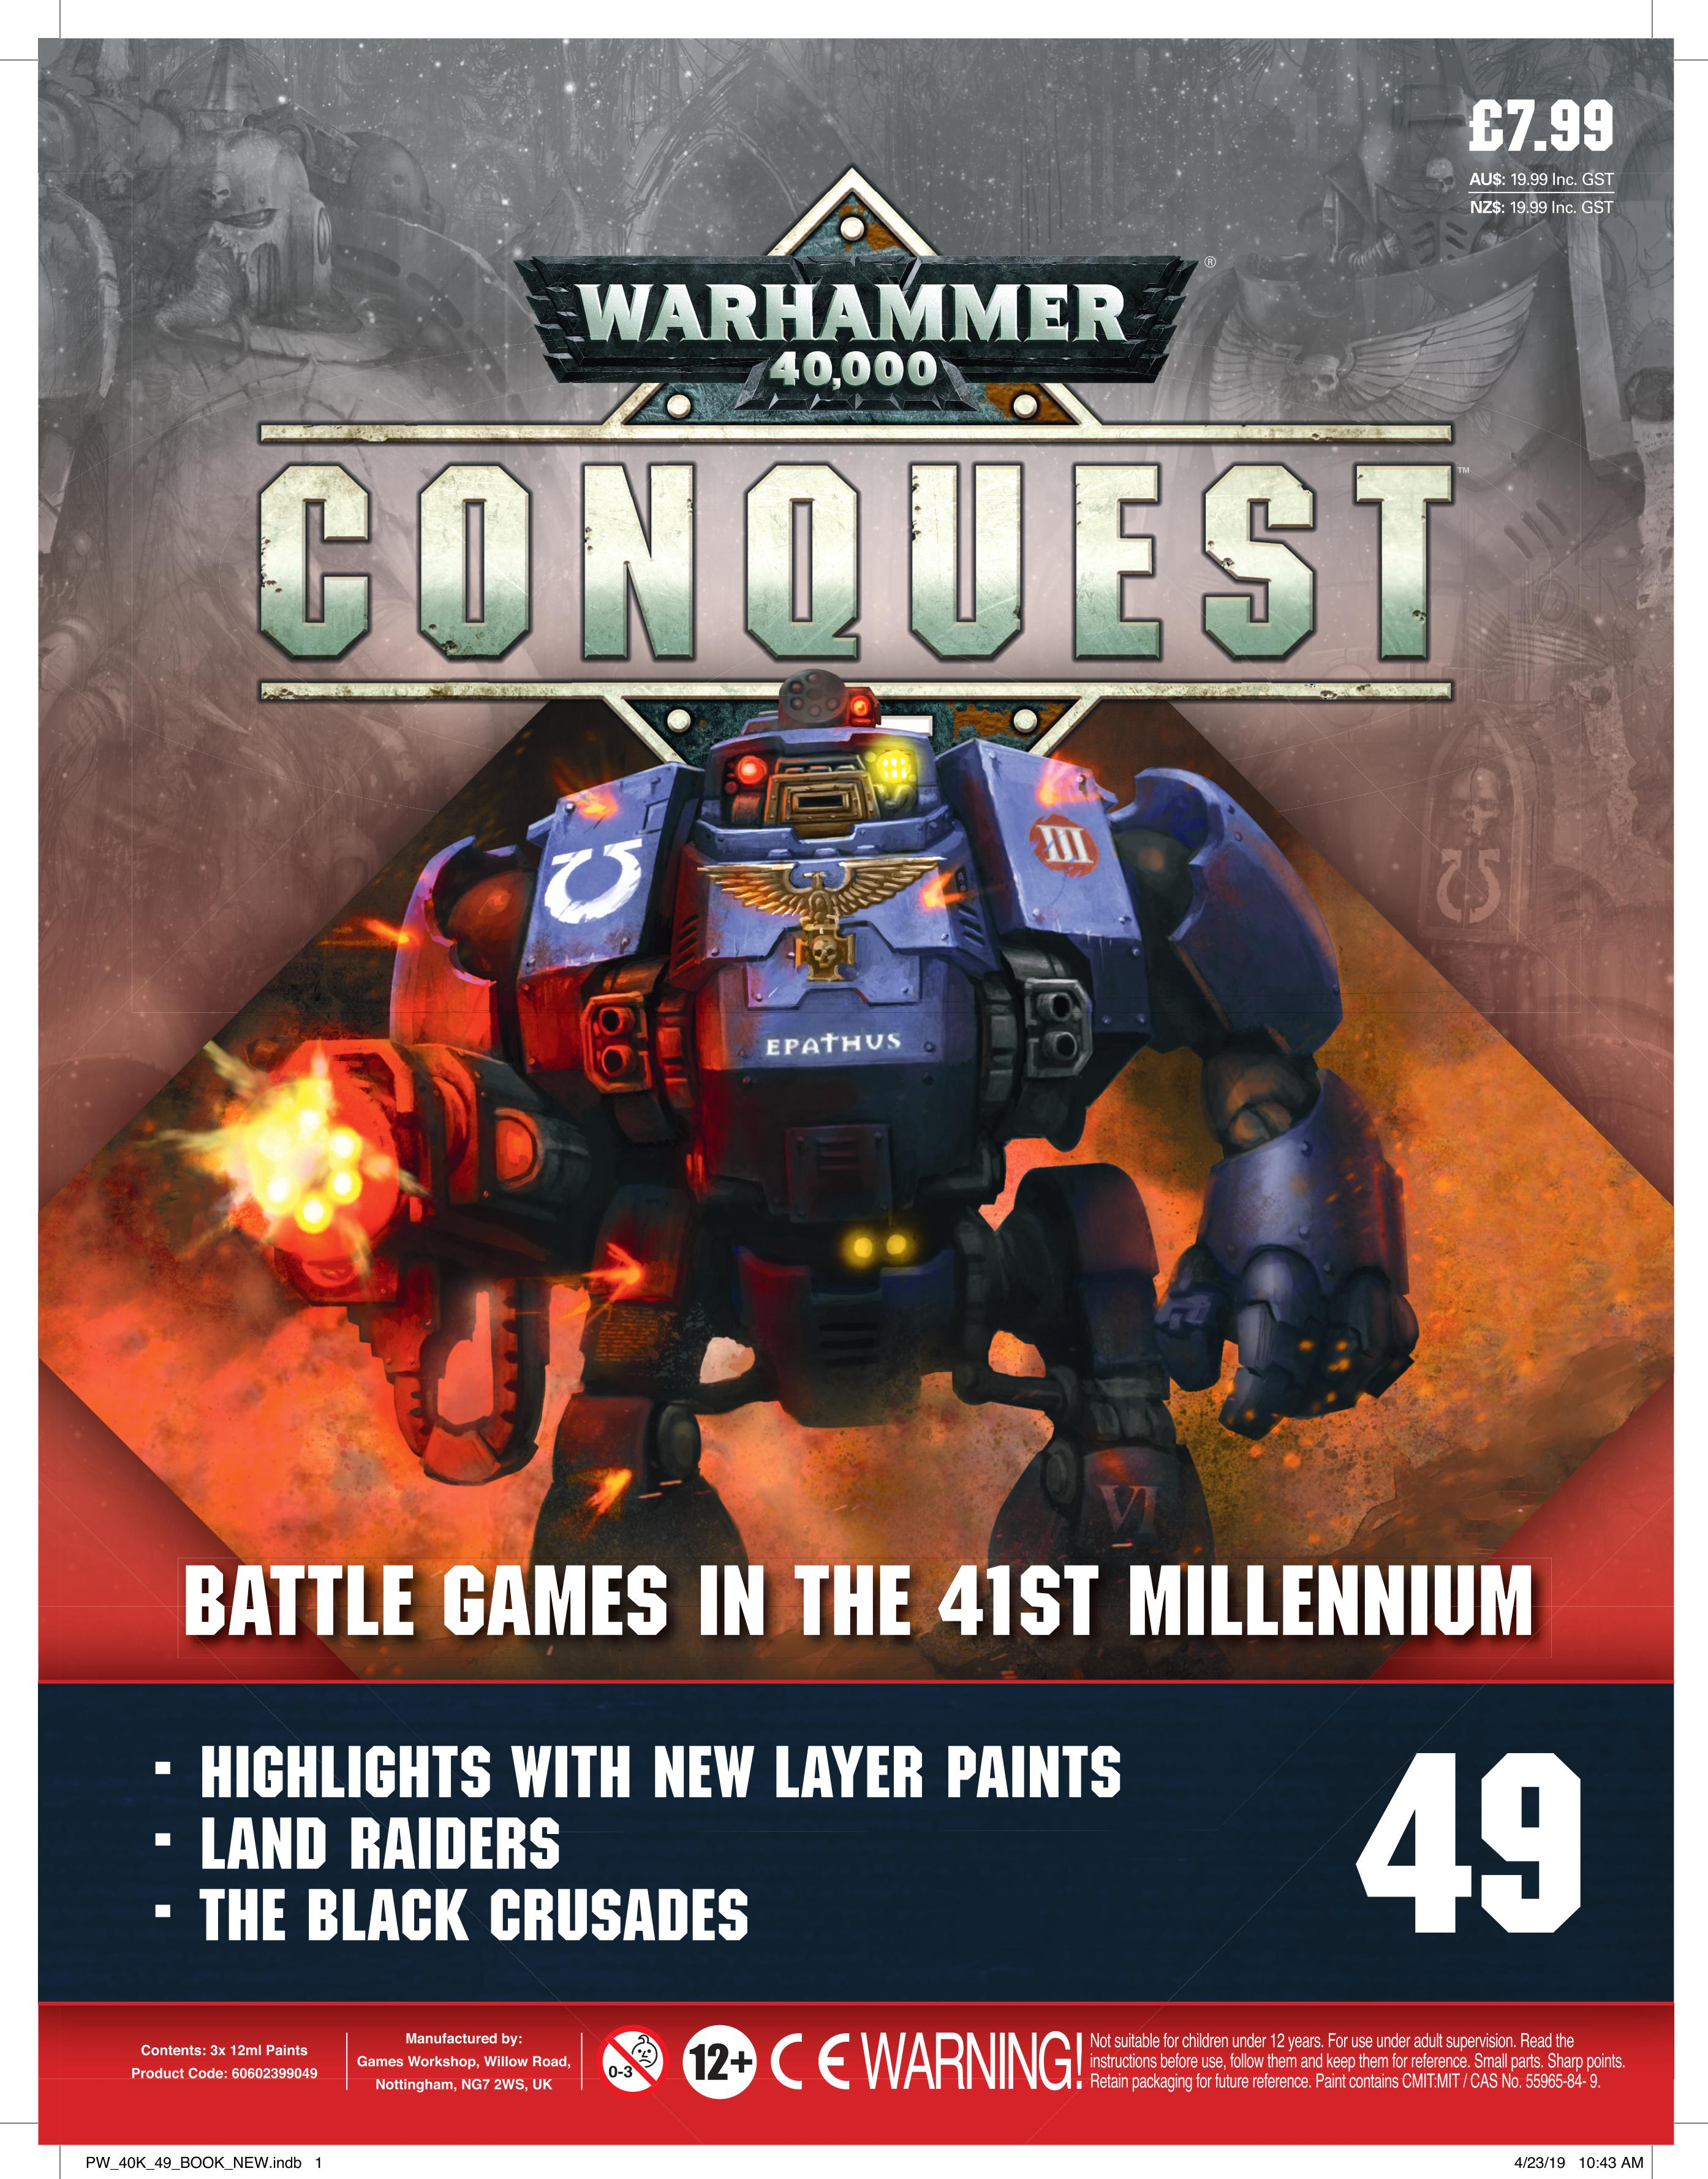 Warhammer Conquest #49 - Waterfront News